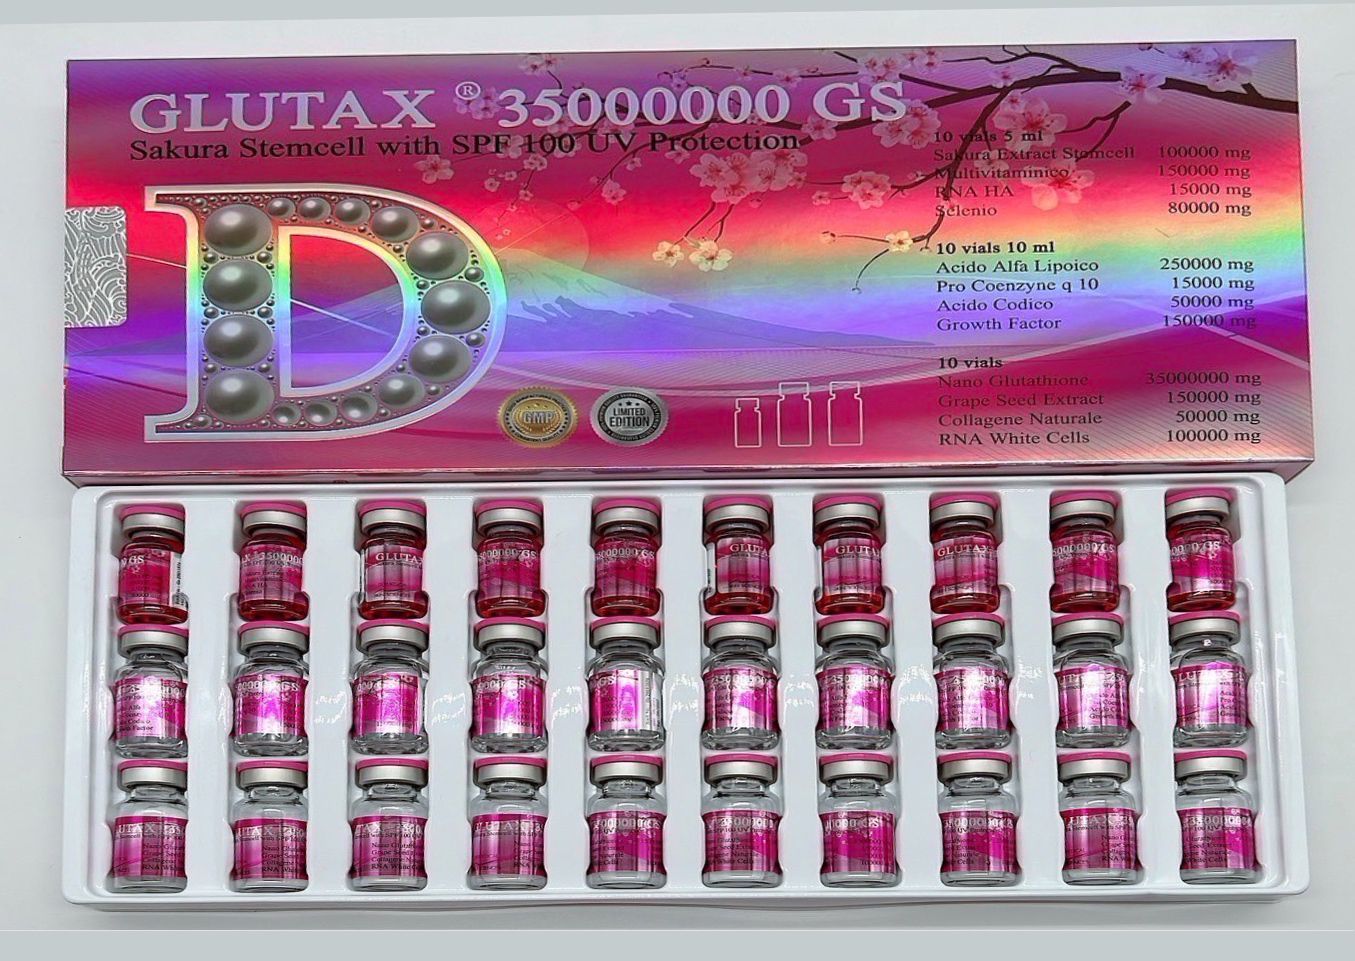 Glutax 35000000GS Sakura Glutathione Whitening Injection